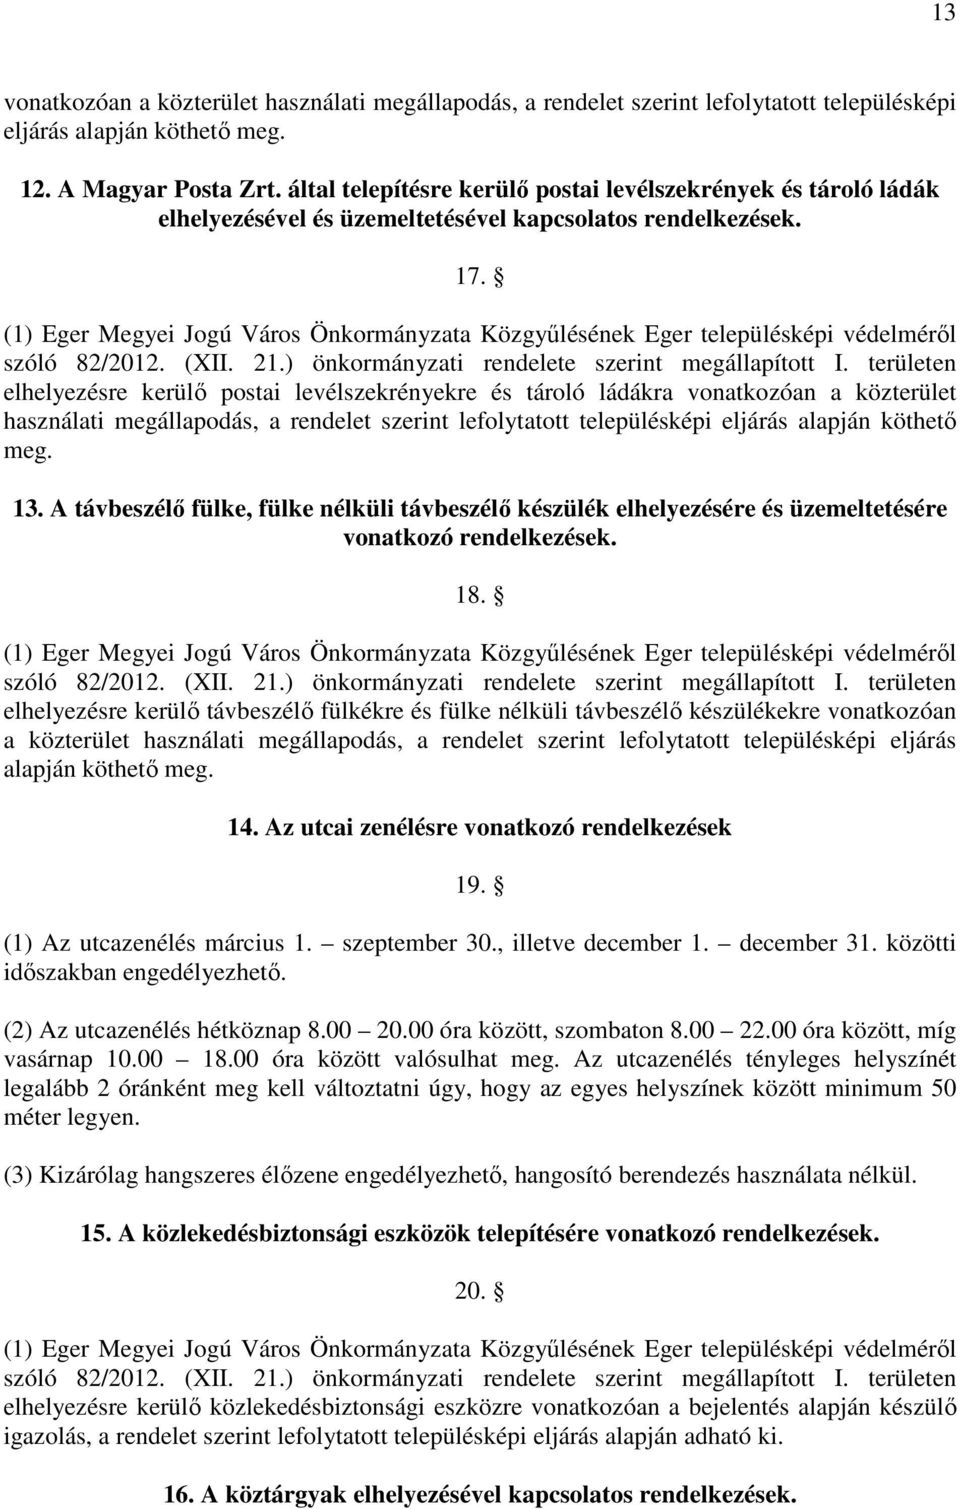 (1) Eger Megyei Jogú Város Önkormányzata Közgyűlésének Eger településképi védelméről szóló 82/2012. (XII. 21.) önkormányzati rendelete szerint megállapított I.